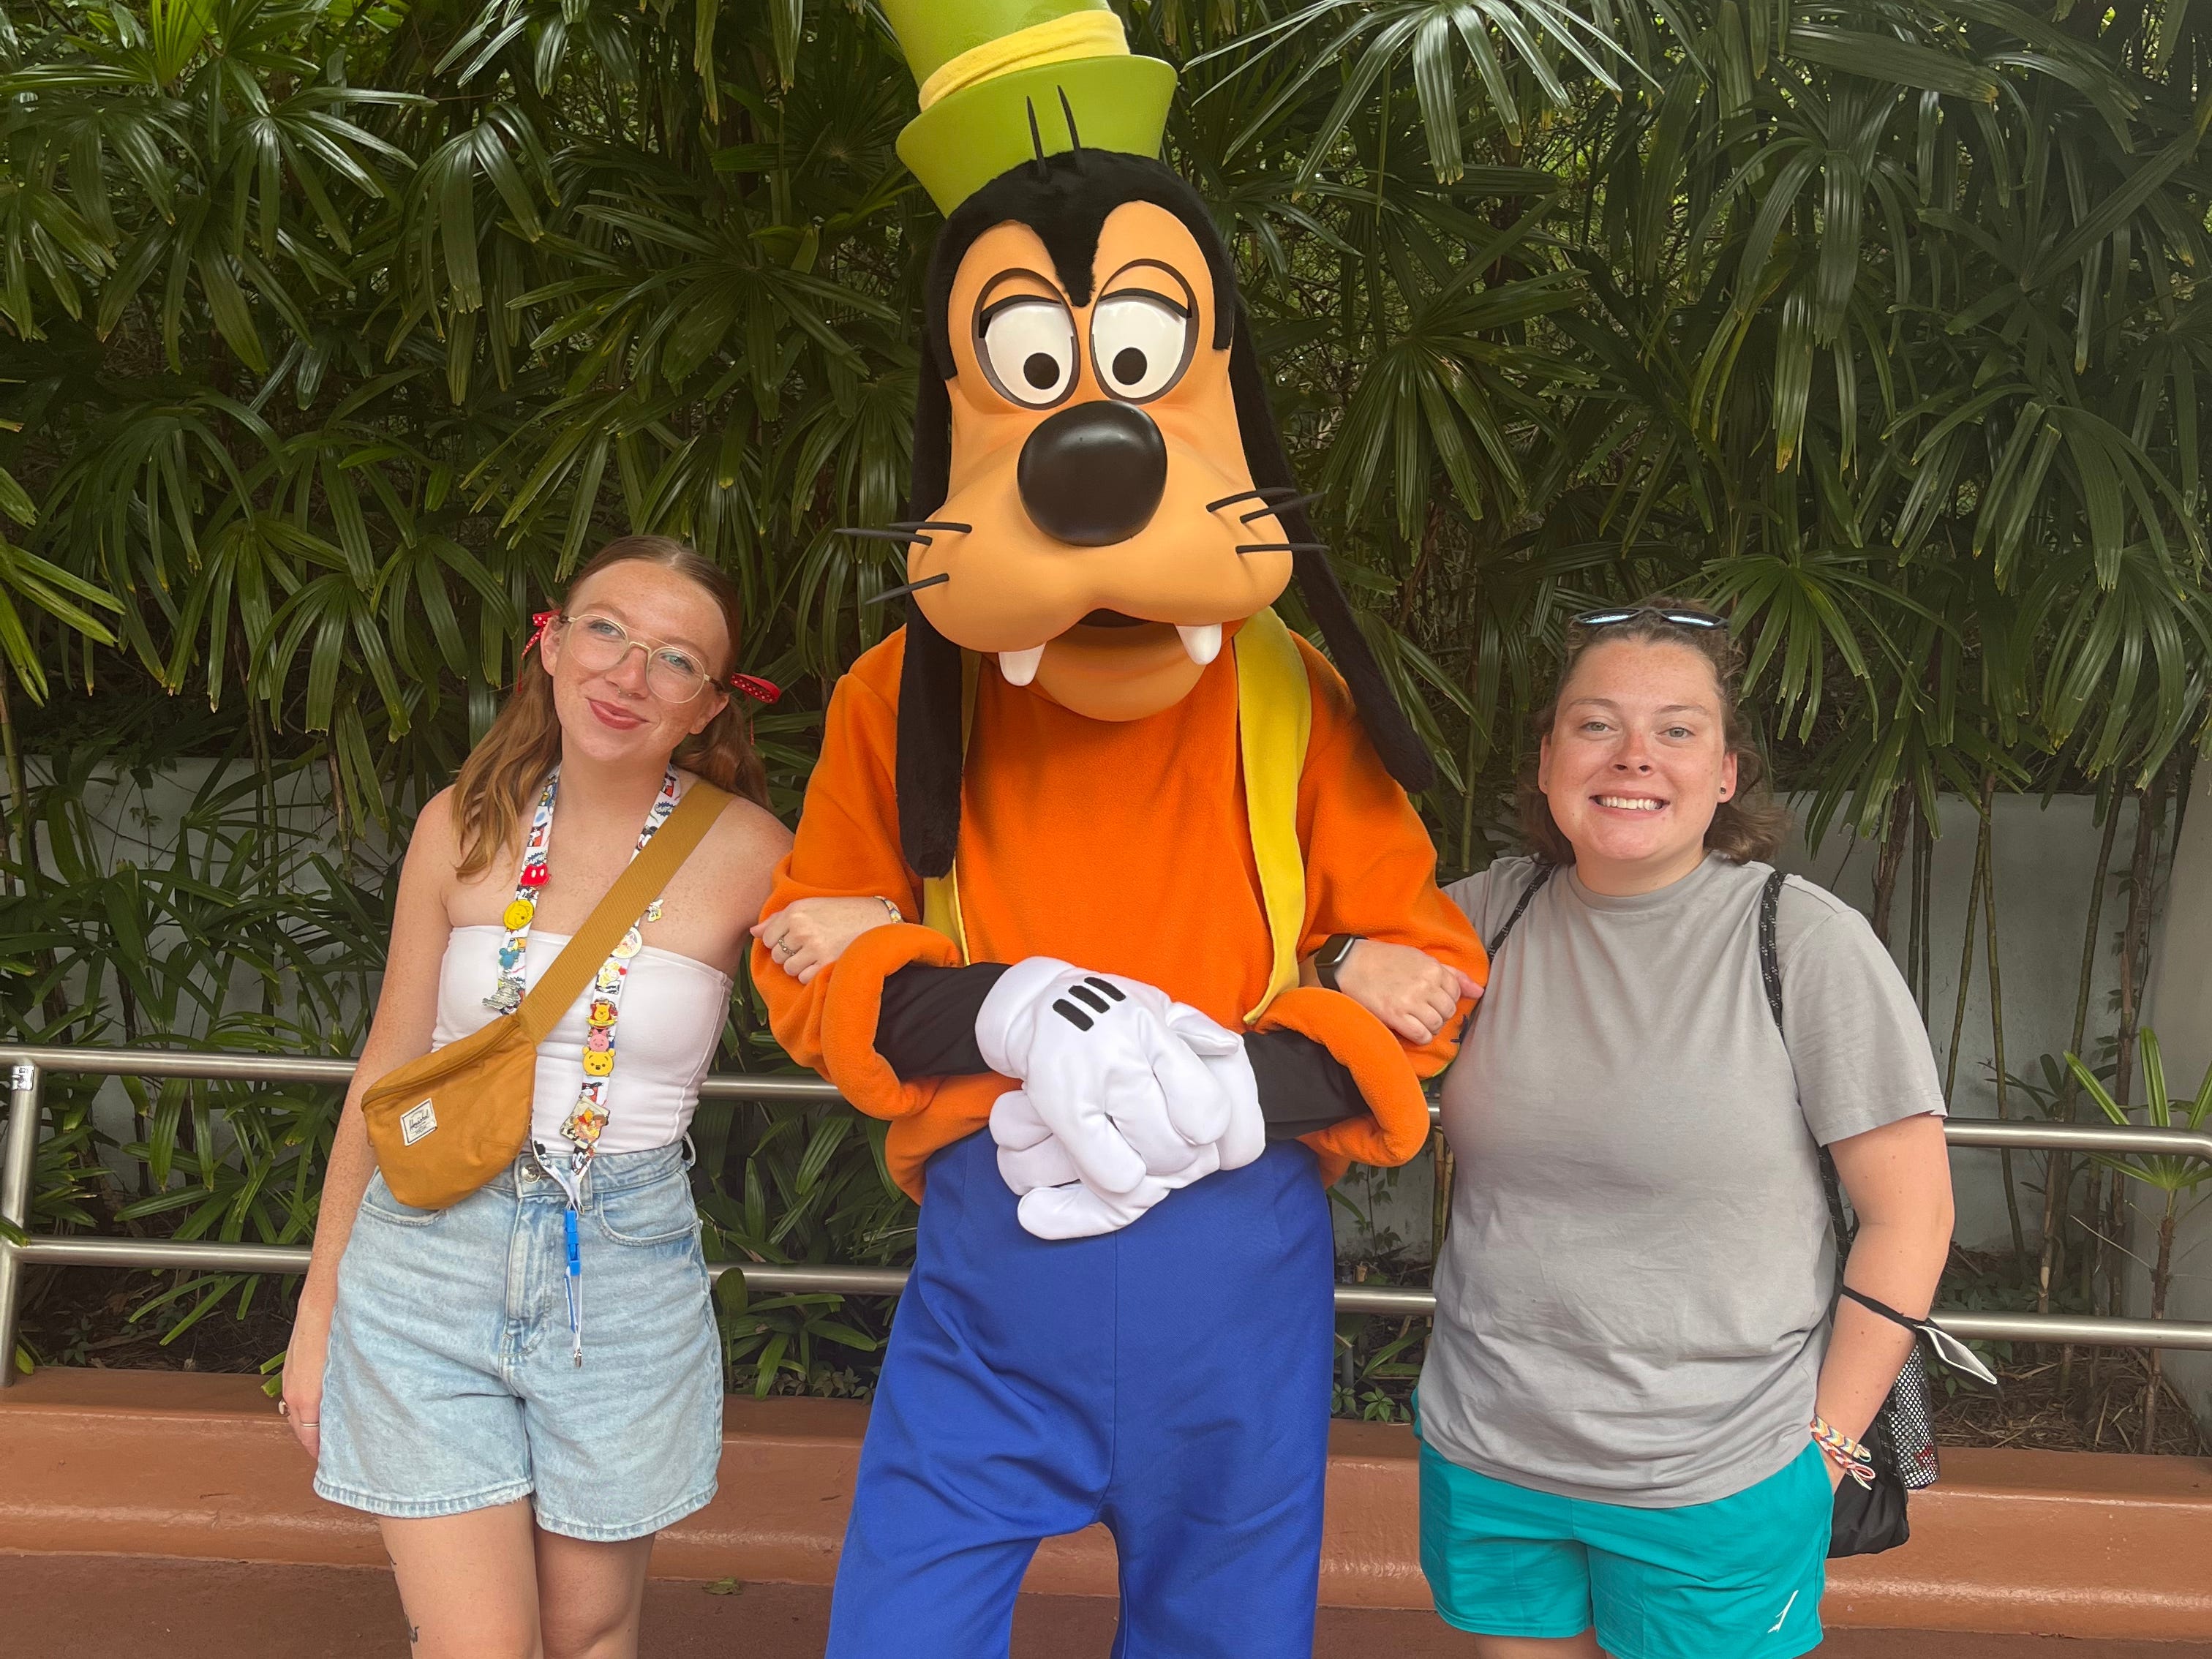 Jordan und ihr Partner posieren mit Goofy in Disney World